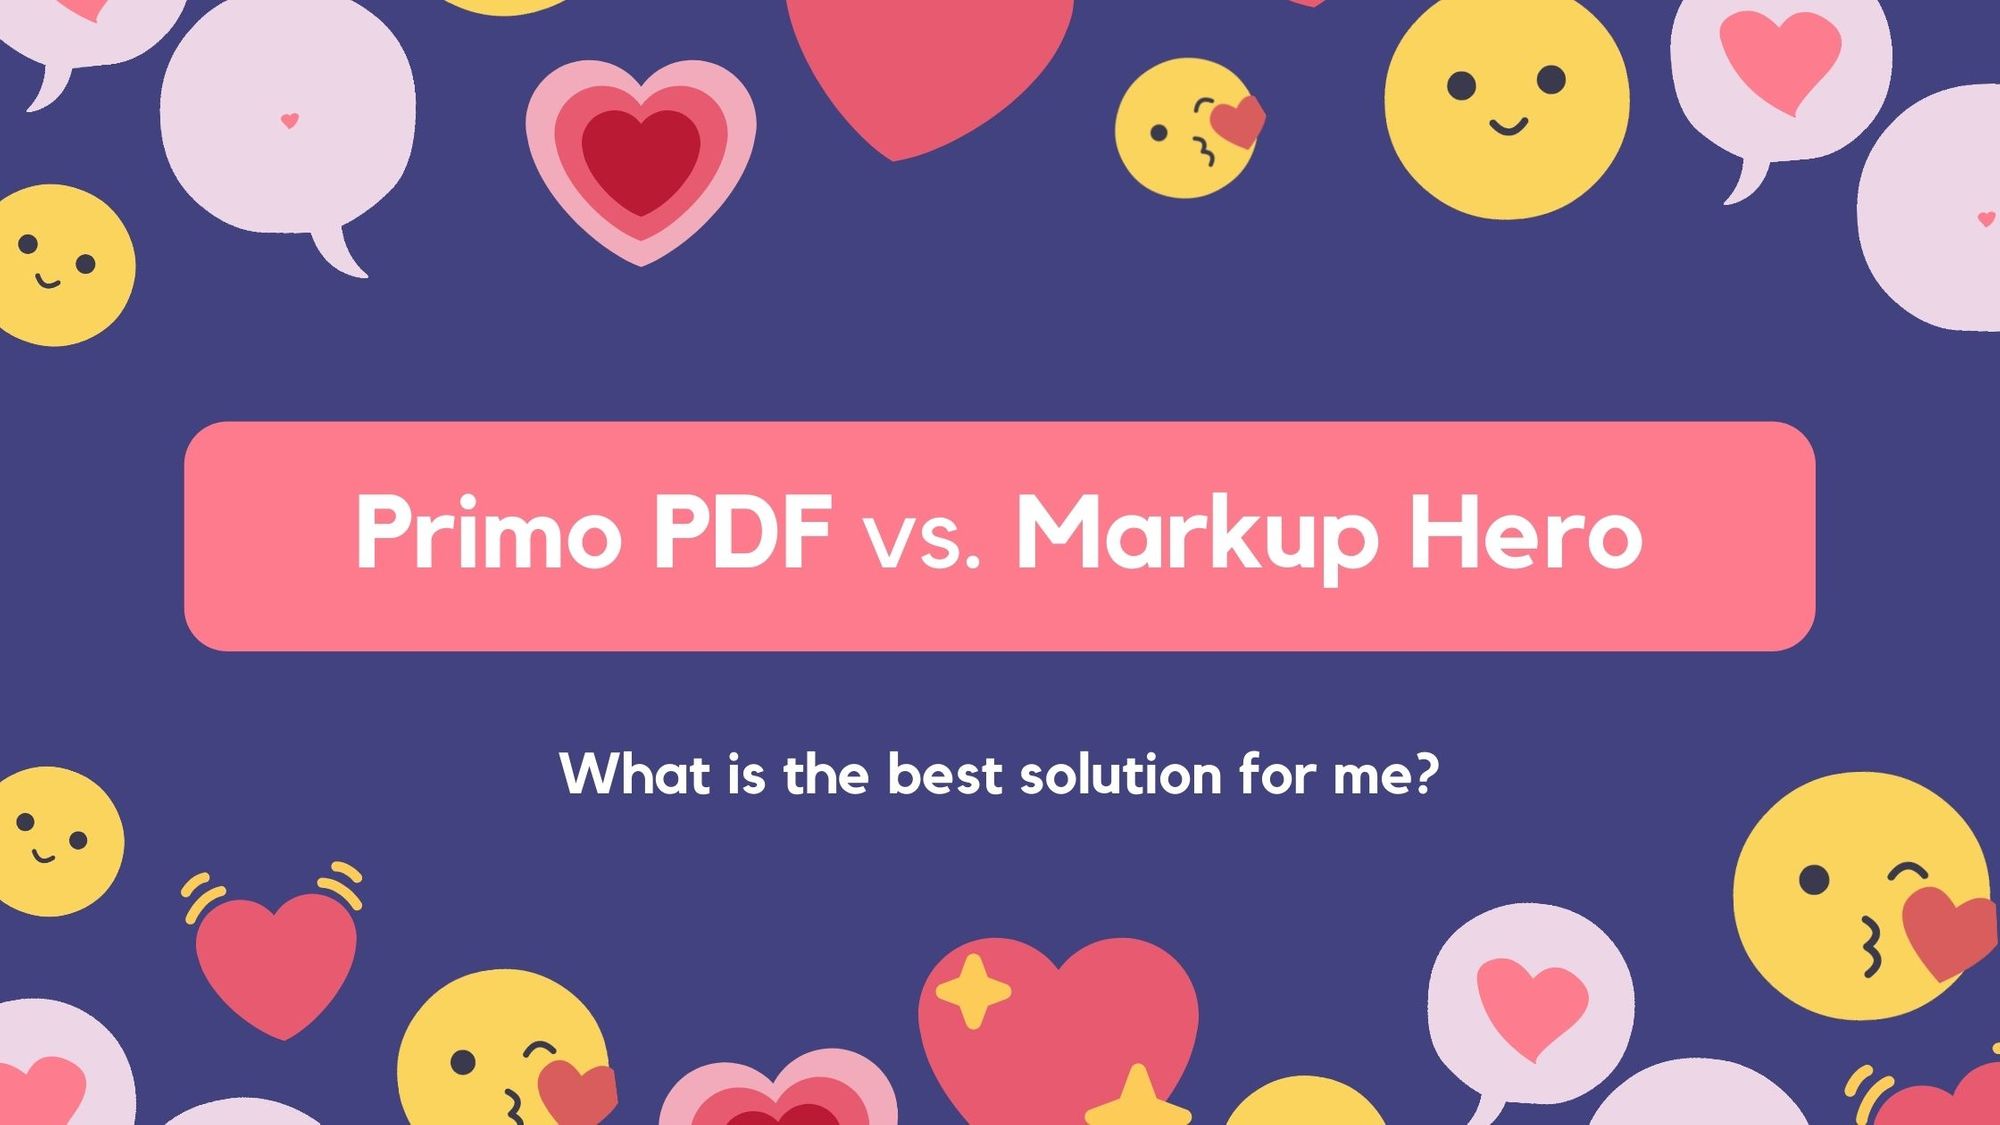 Primo PDF vs. Markup Hero